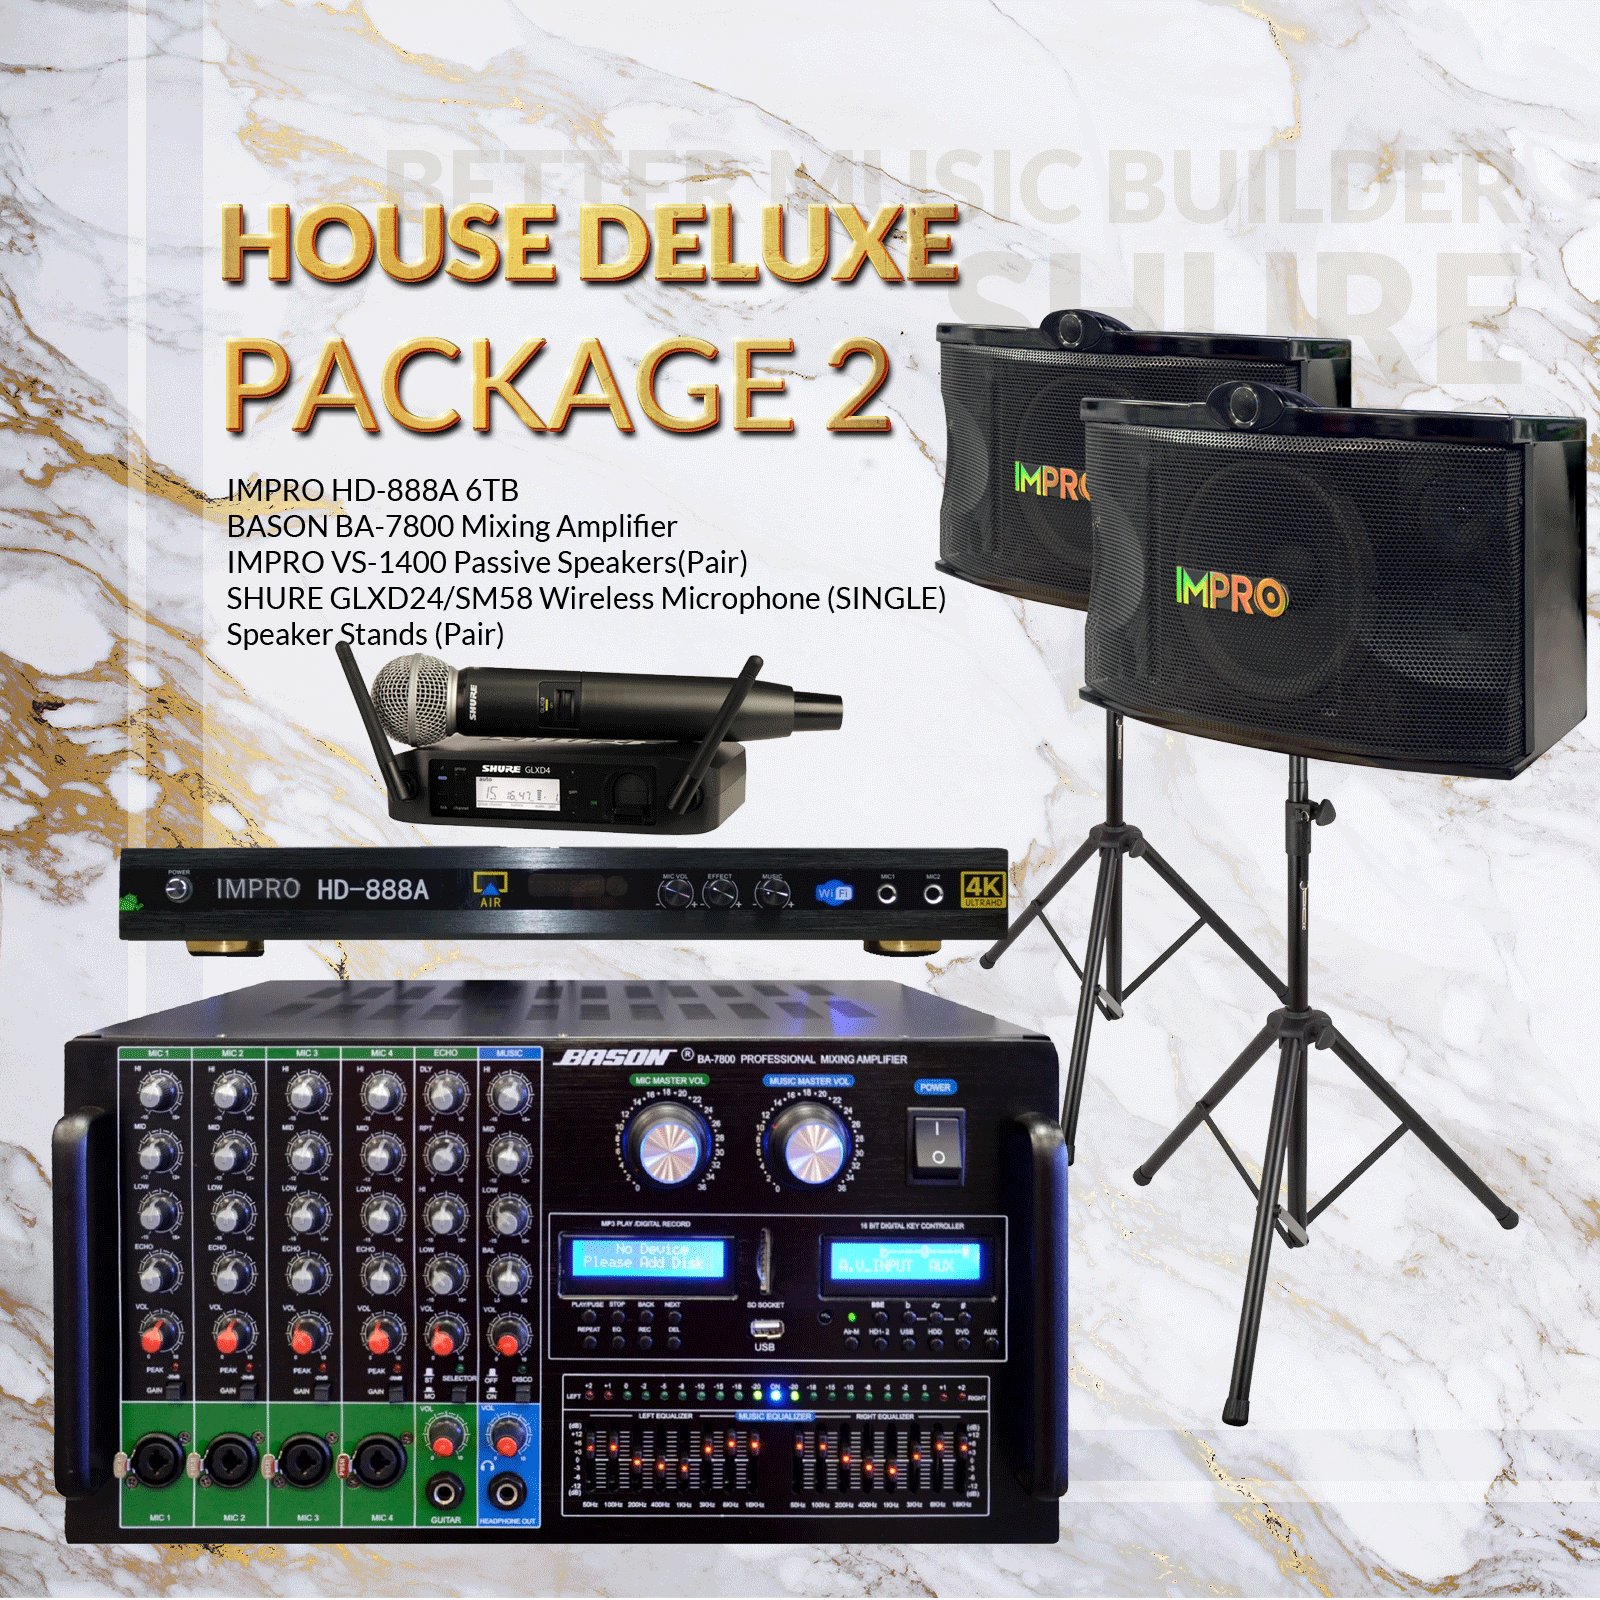 Gói House DLX #02: Bason BA-7800 + ImPro VS-1400 + HD-888A + Chân đế + Hệ thống micro Shure GLXD